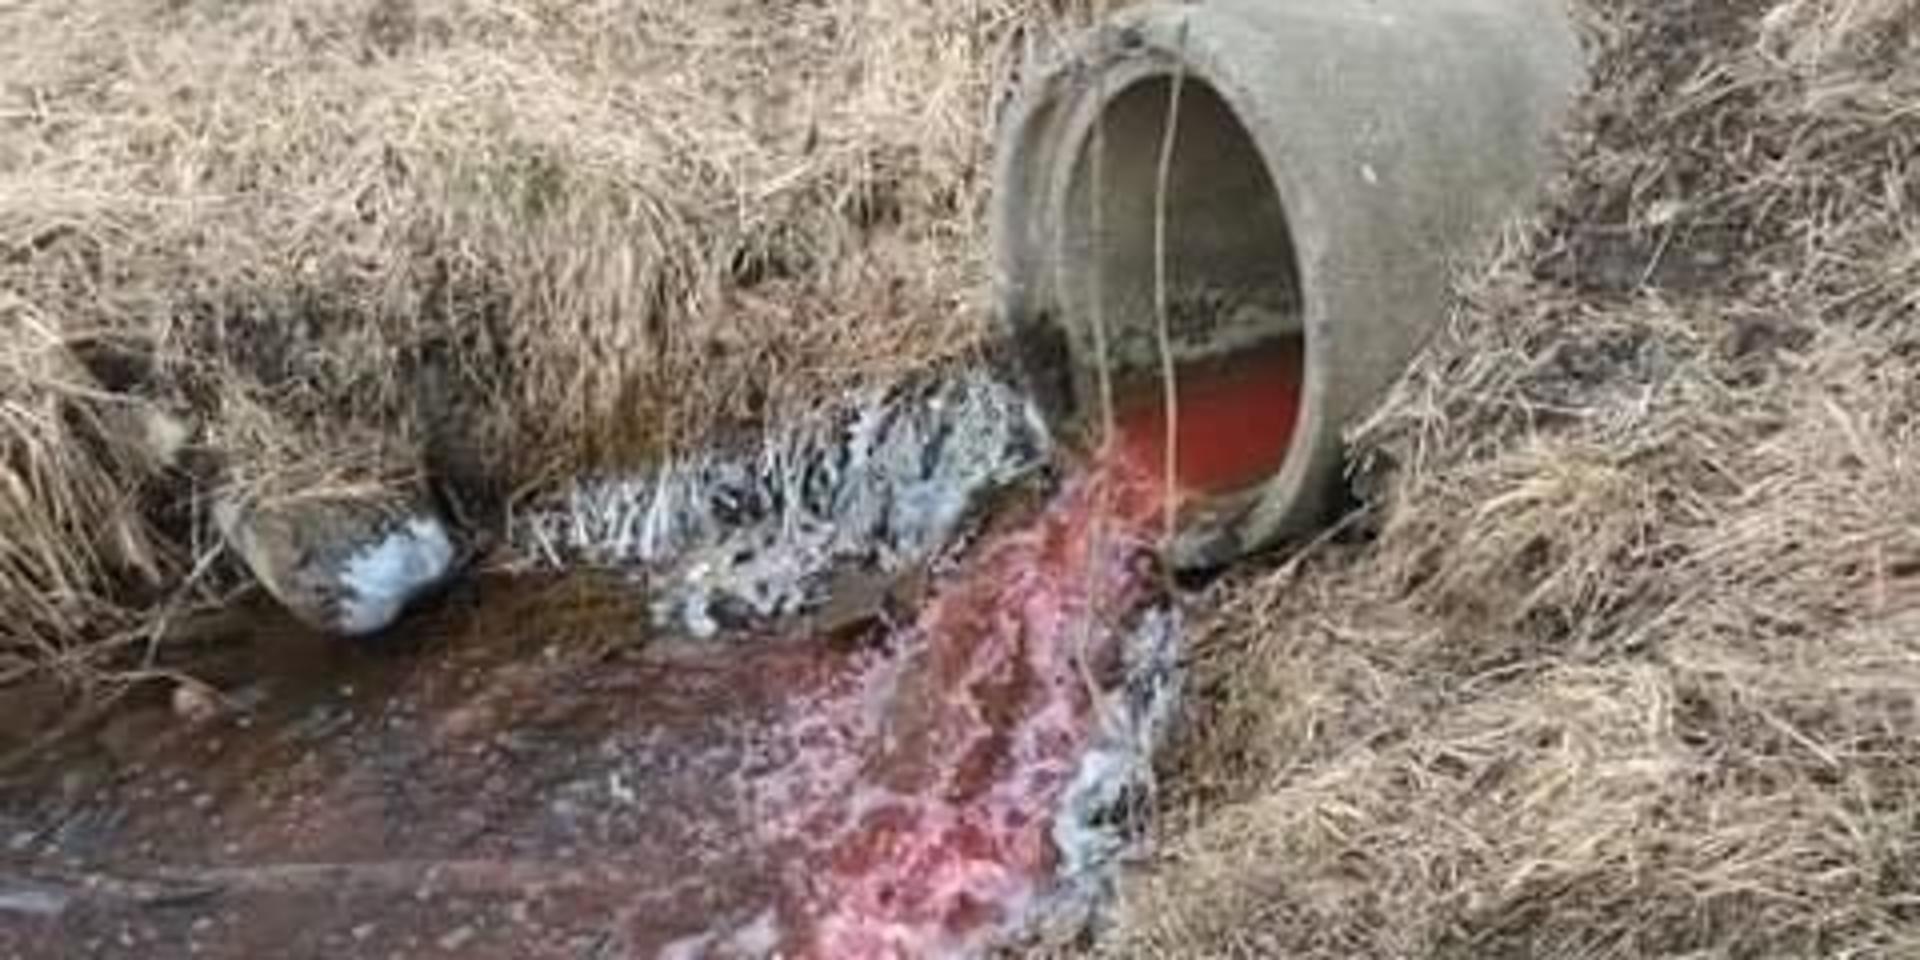 Rött vatten forsade ut i bäcken i Kållered. Foto: Privat